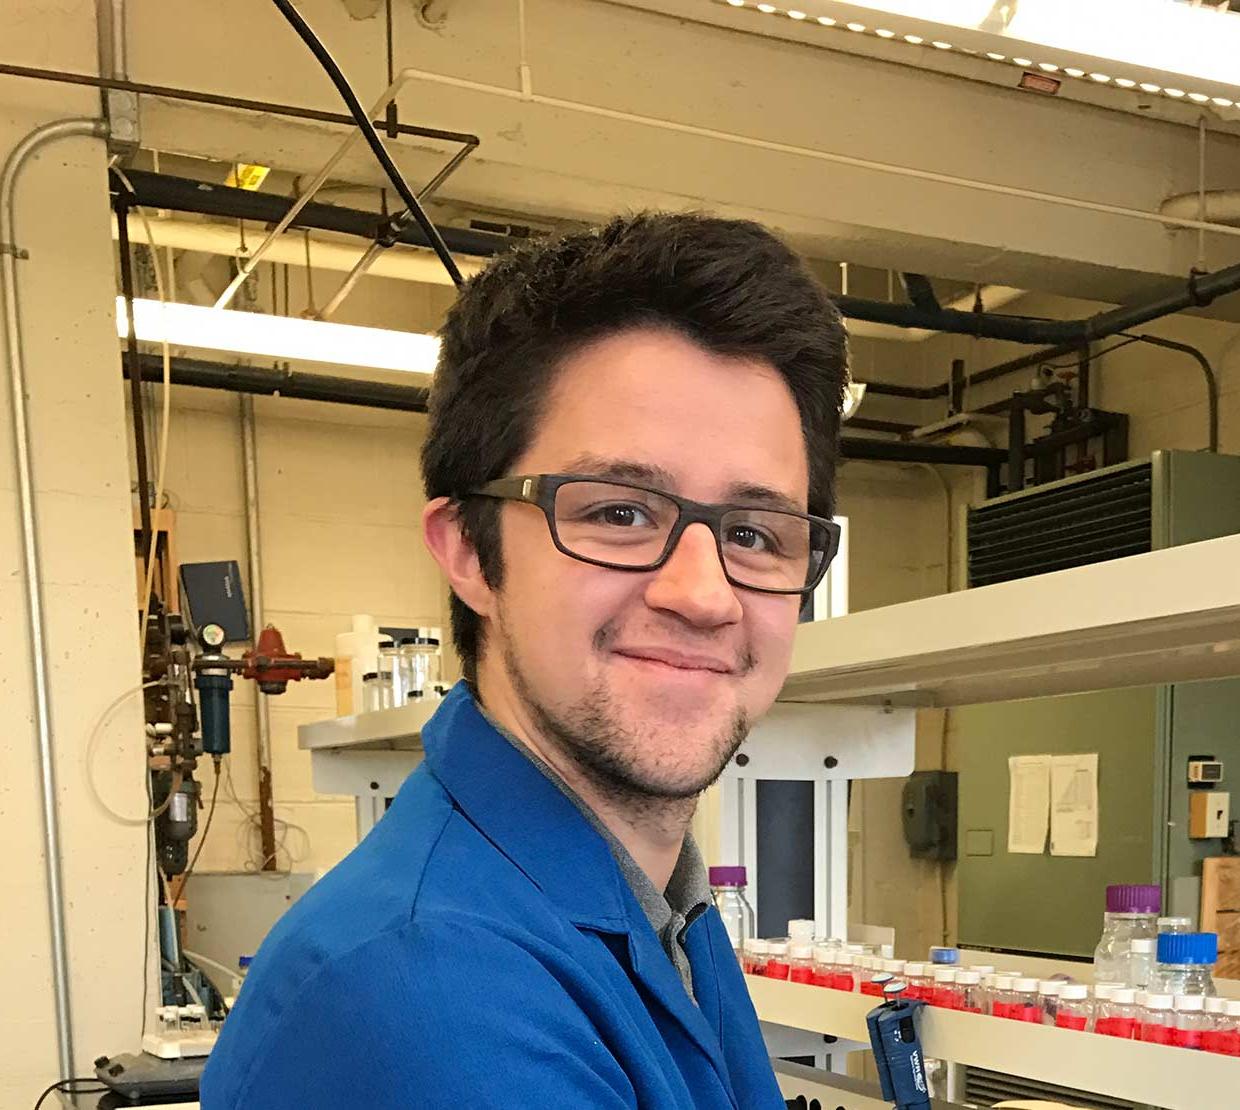 Collin Nicholas Muniz wearing a blue lab coat in chemistry lab